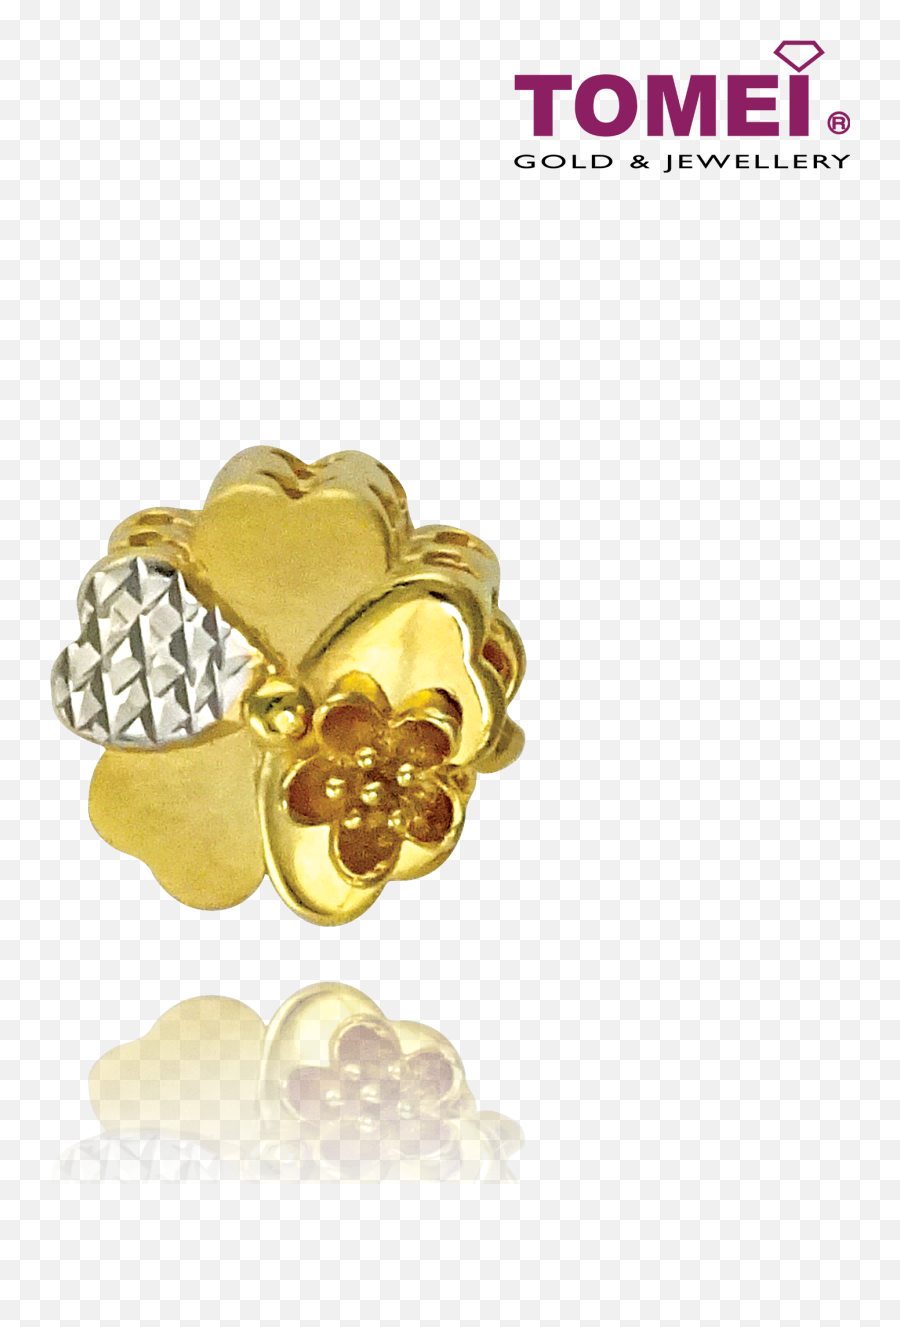 Etomei - Tomei Jewellery Emoji,Emoji Charm Bracelets